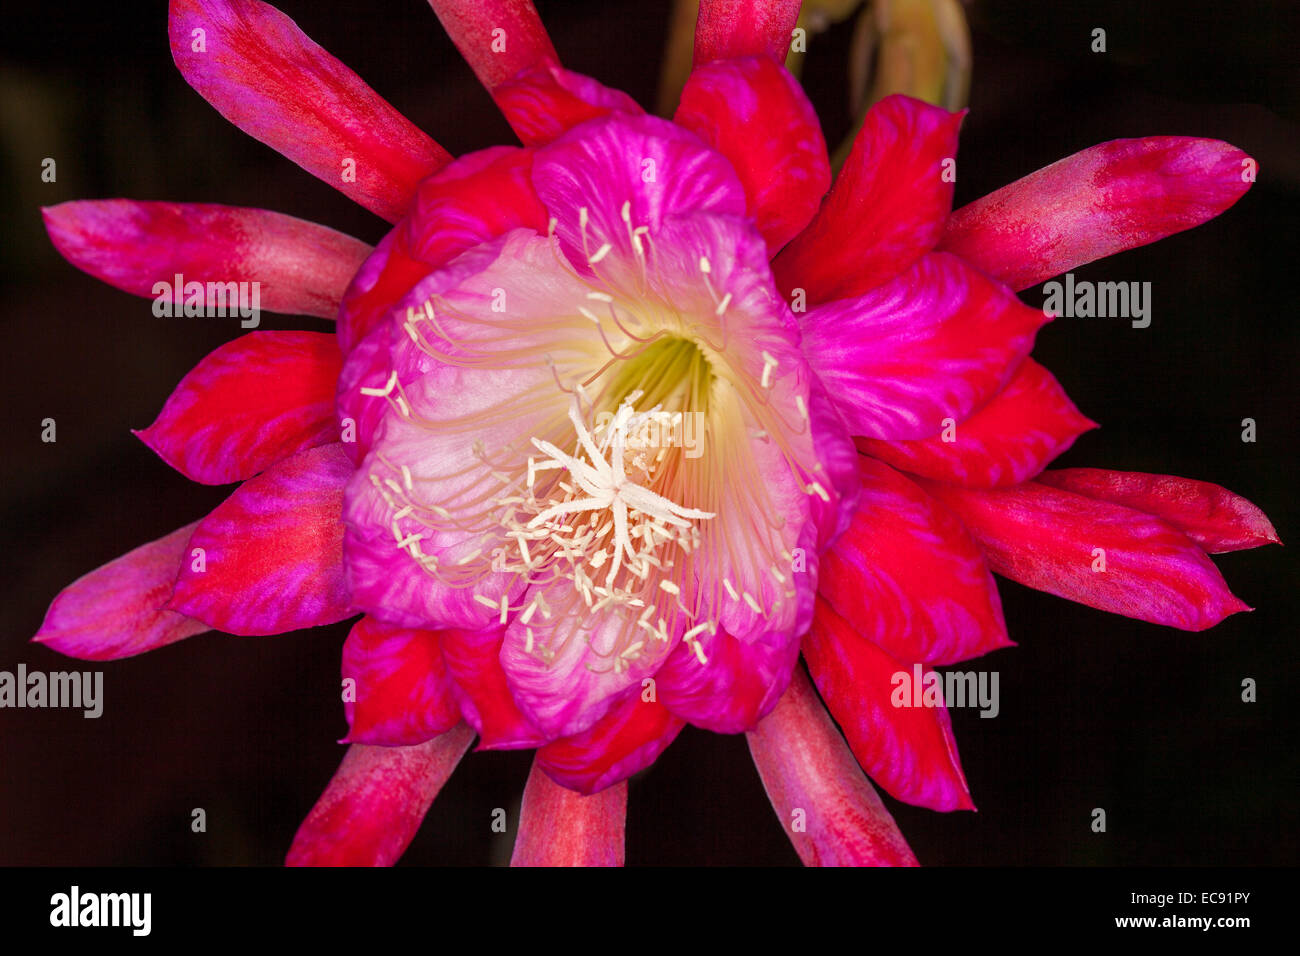 Grand spectaculaire fleur de cactus epiphyllum rouge vif avec des pétales intérieurs magenta & gorge blanche sur fond noir Banque D'Images